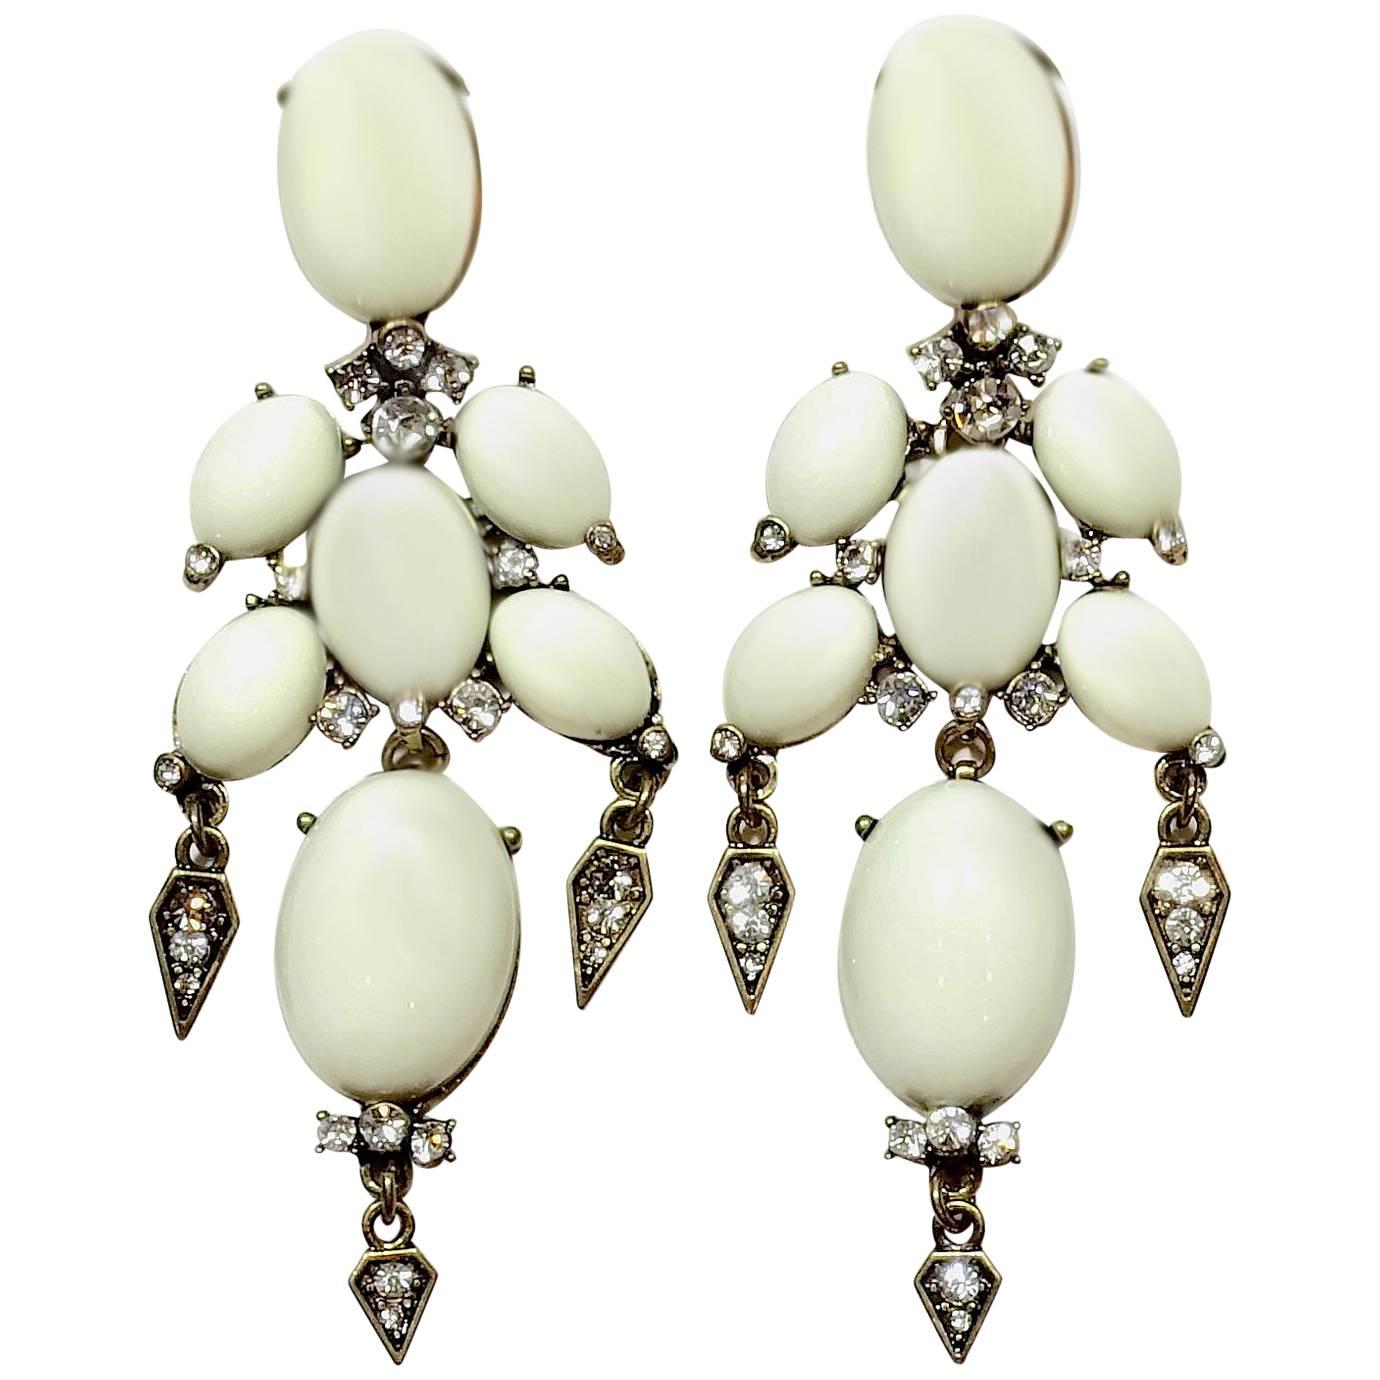 Unsigned Oscar de la Renta Pierced White & Rhinestone Dangling Earrings